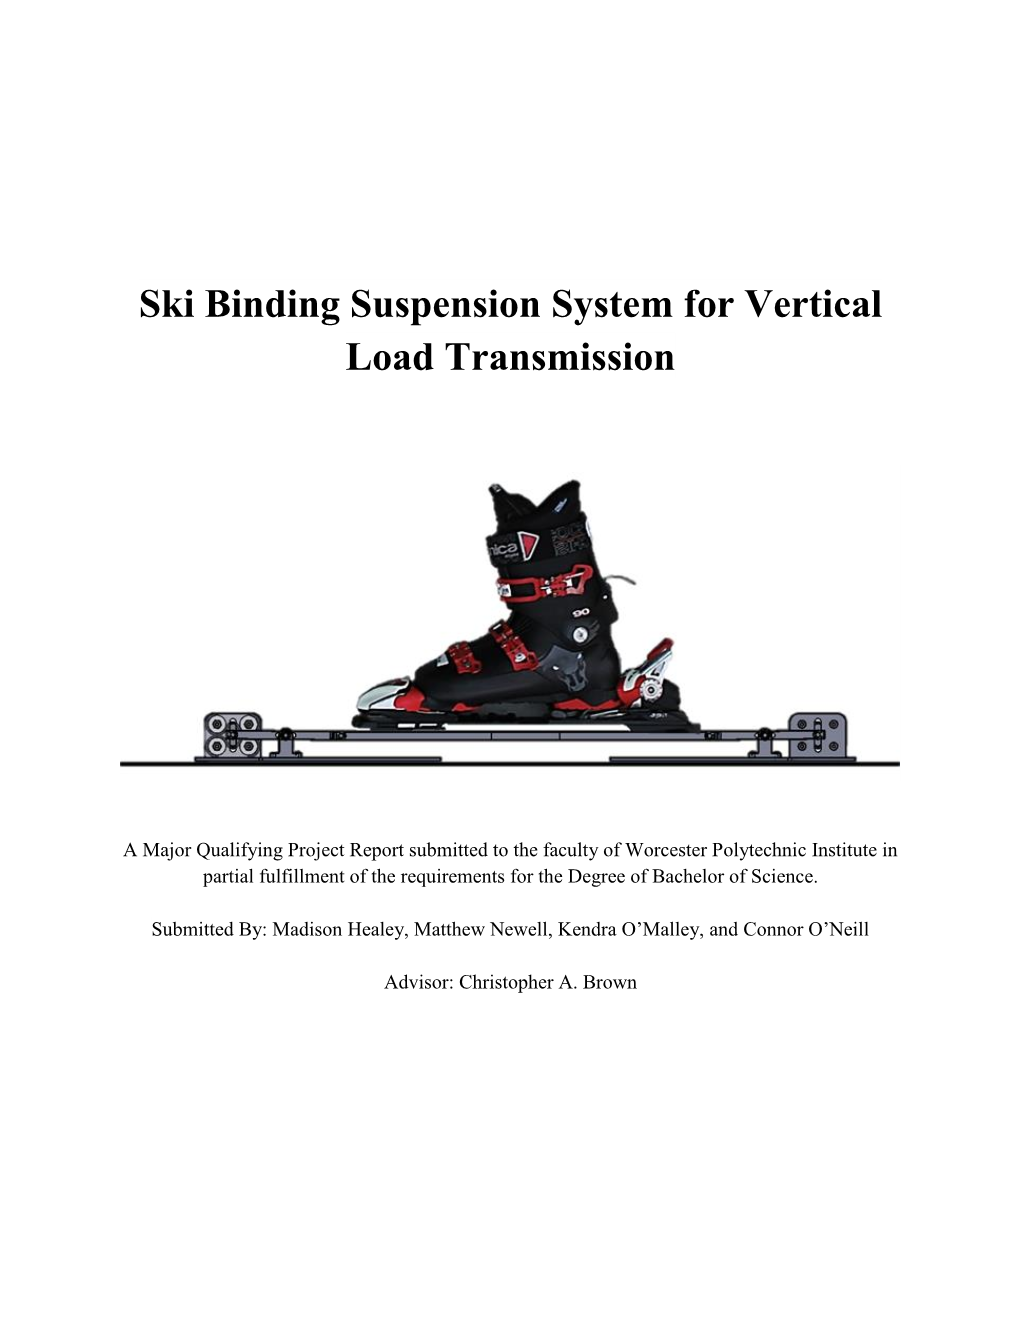 Ski Binding Suspension System for Vertical Load Transmission